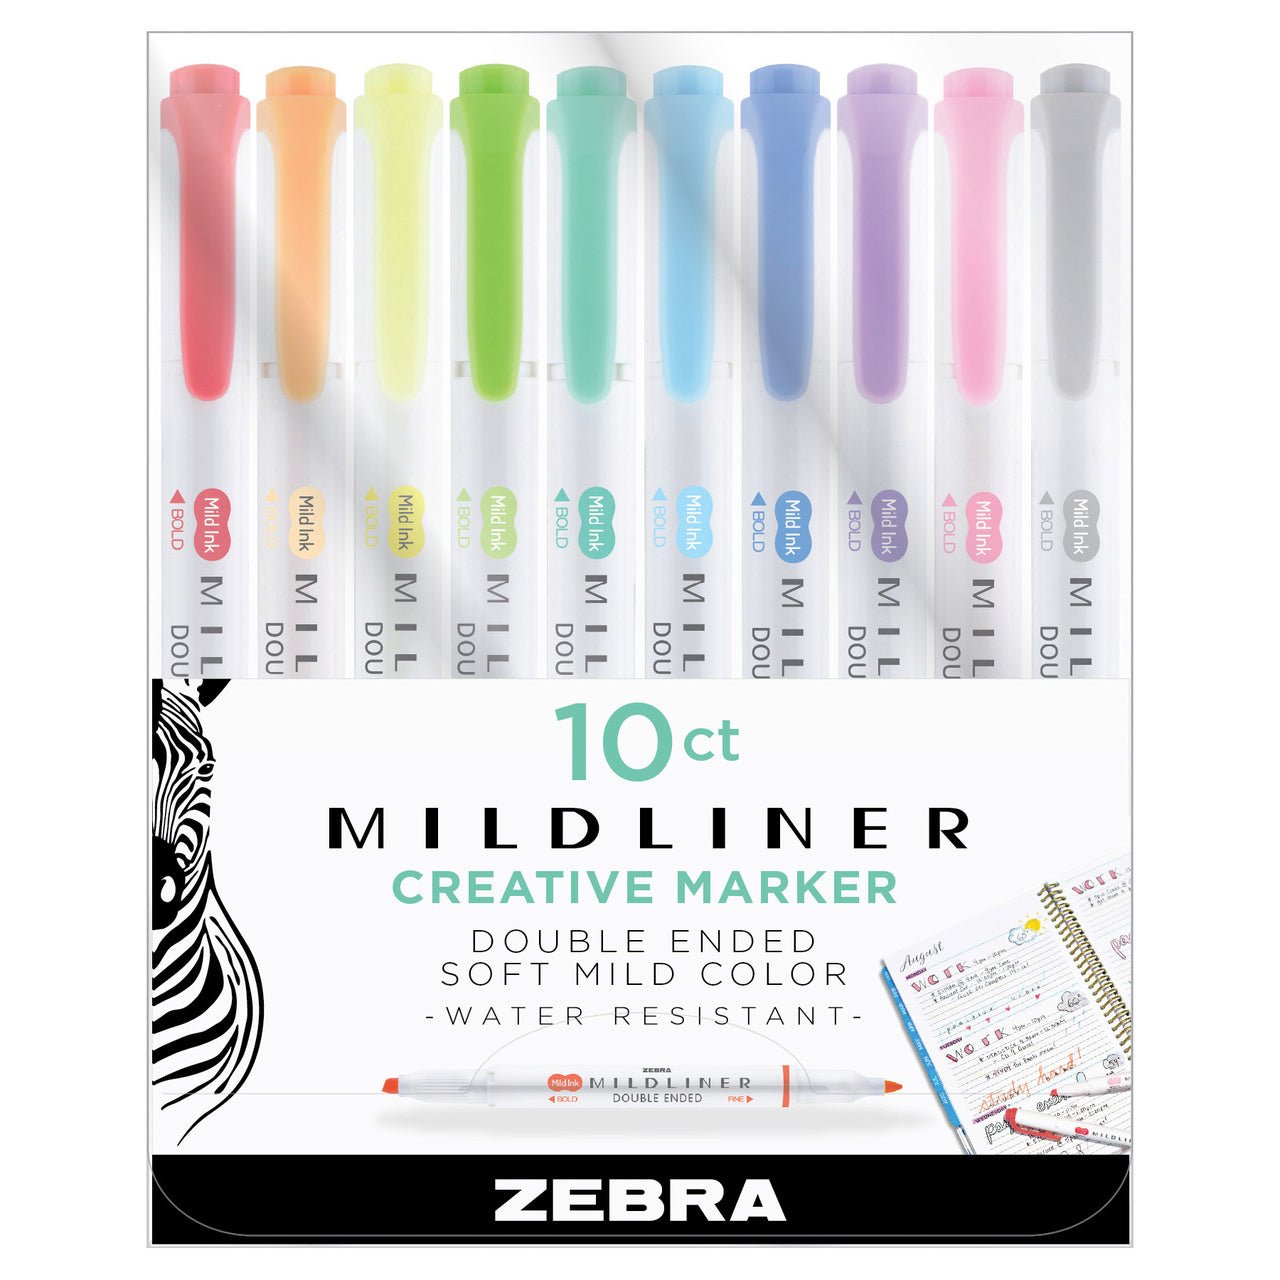 http://merriartist.com/cdn/shop/products/zebra-mildliner-creative-marker-10-assorted-colors-set-260376.jpg?v=1671504876